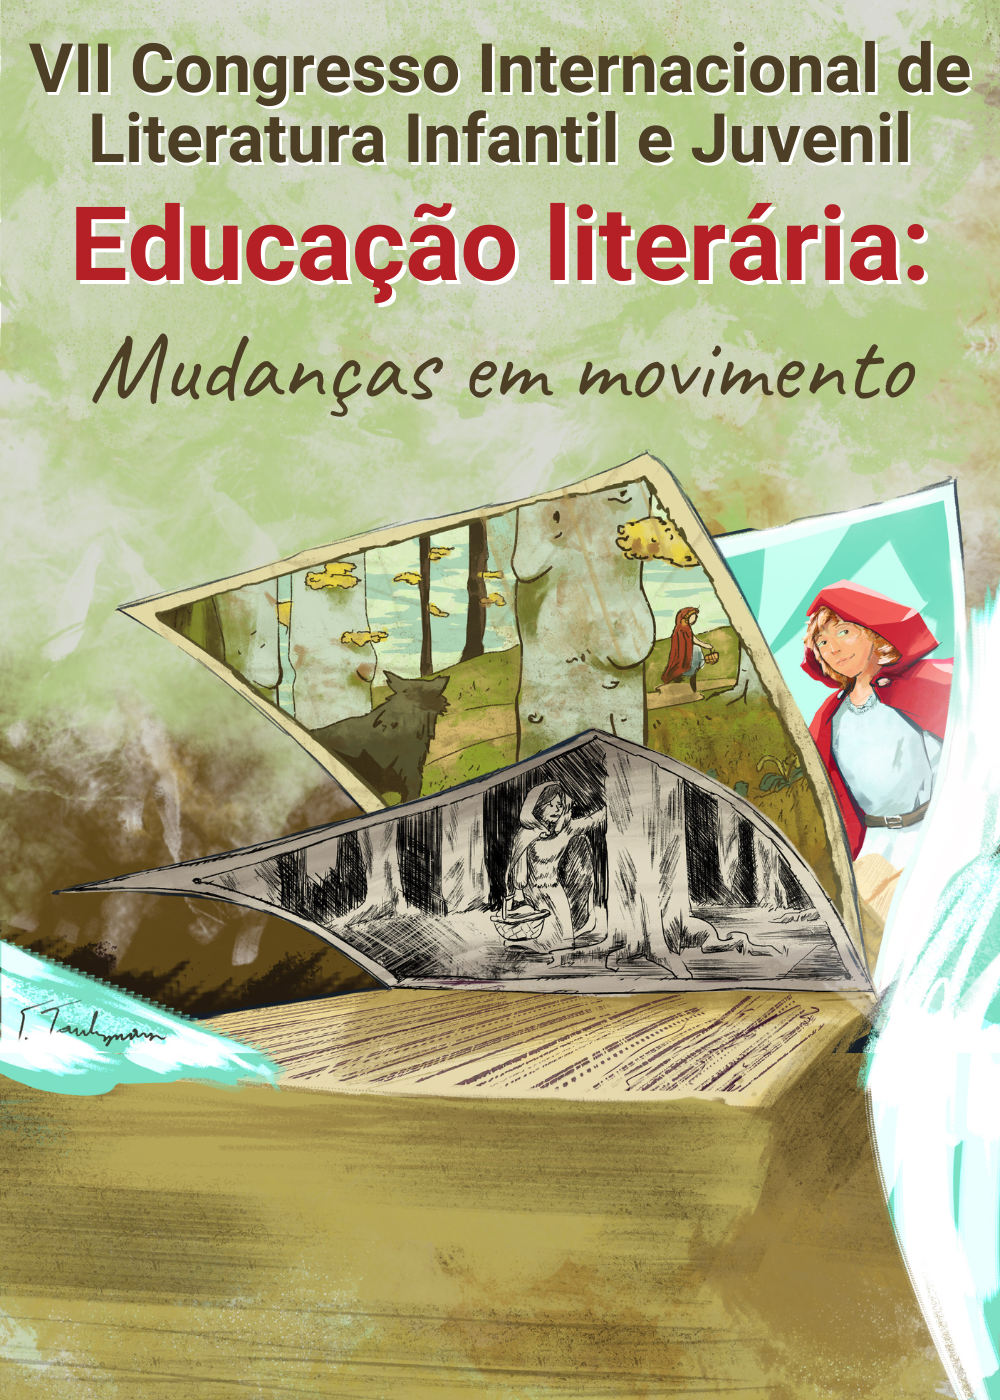 VII Congresso Internacional de  Literatura Infantil e Juvenil  Educação literária: Mudanças em movimento